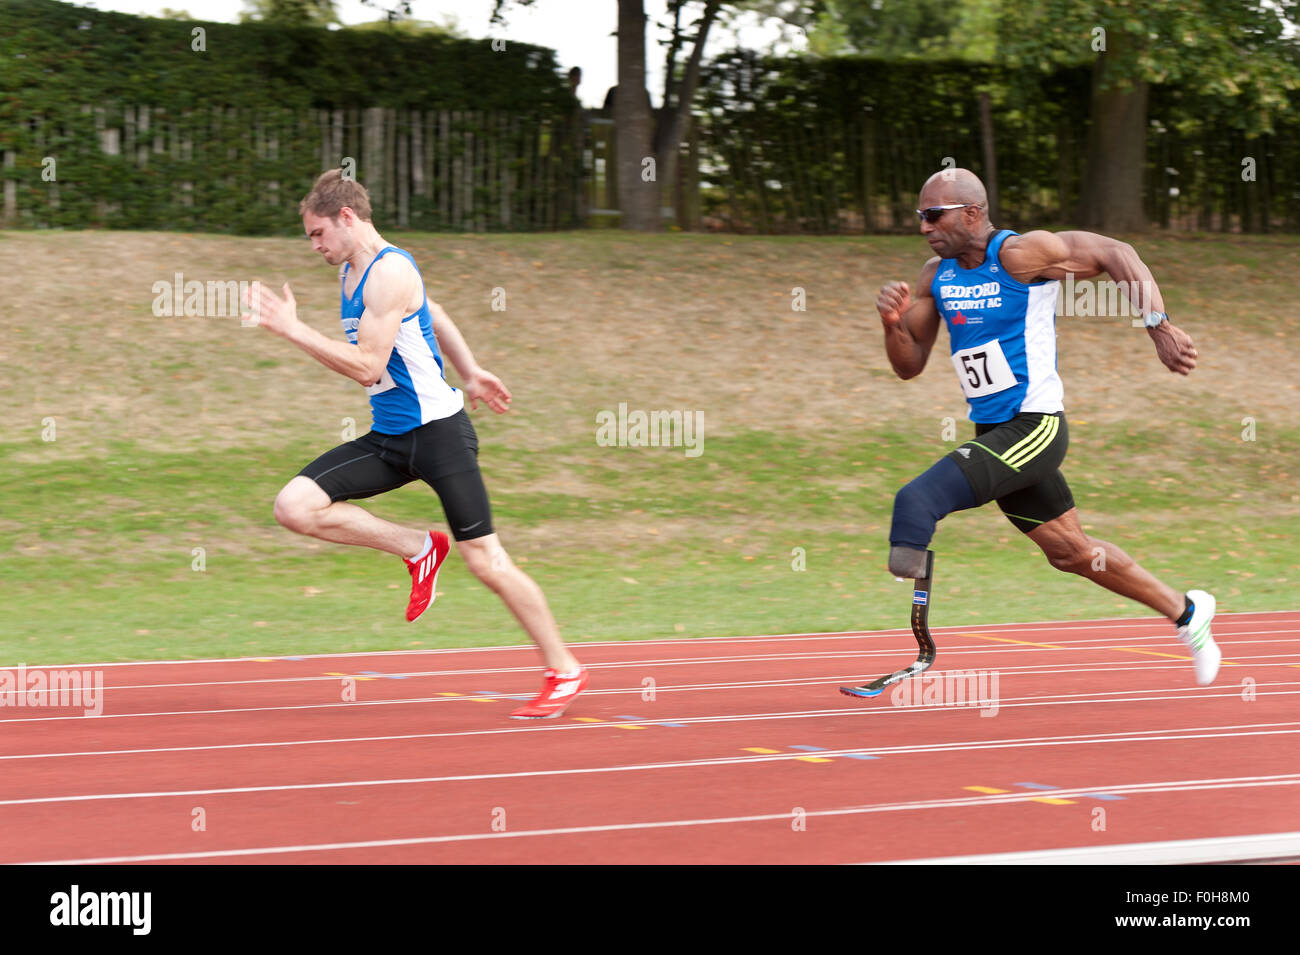 Le sport pour tous les 100m sprint masculin race centaines de mètres tourner à grande vitesse les athlètes sprinters en compétition sur piste et field event Banque D'Images